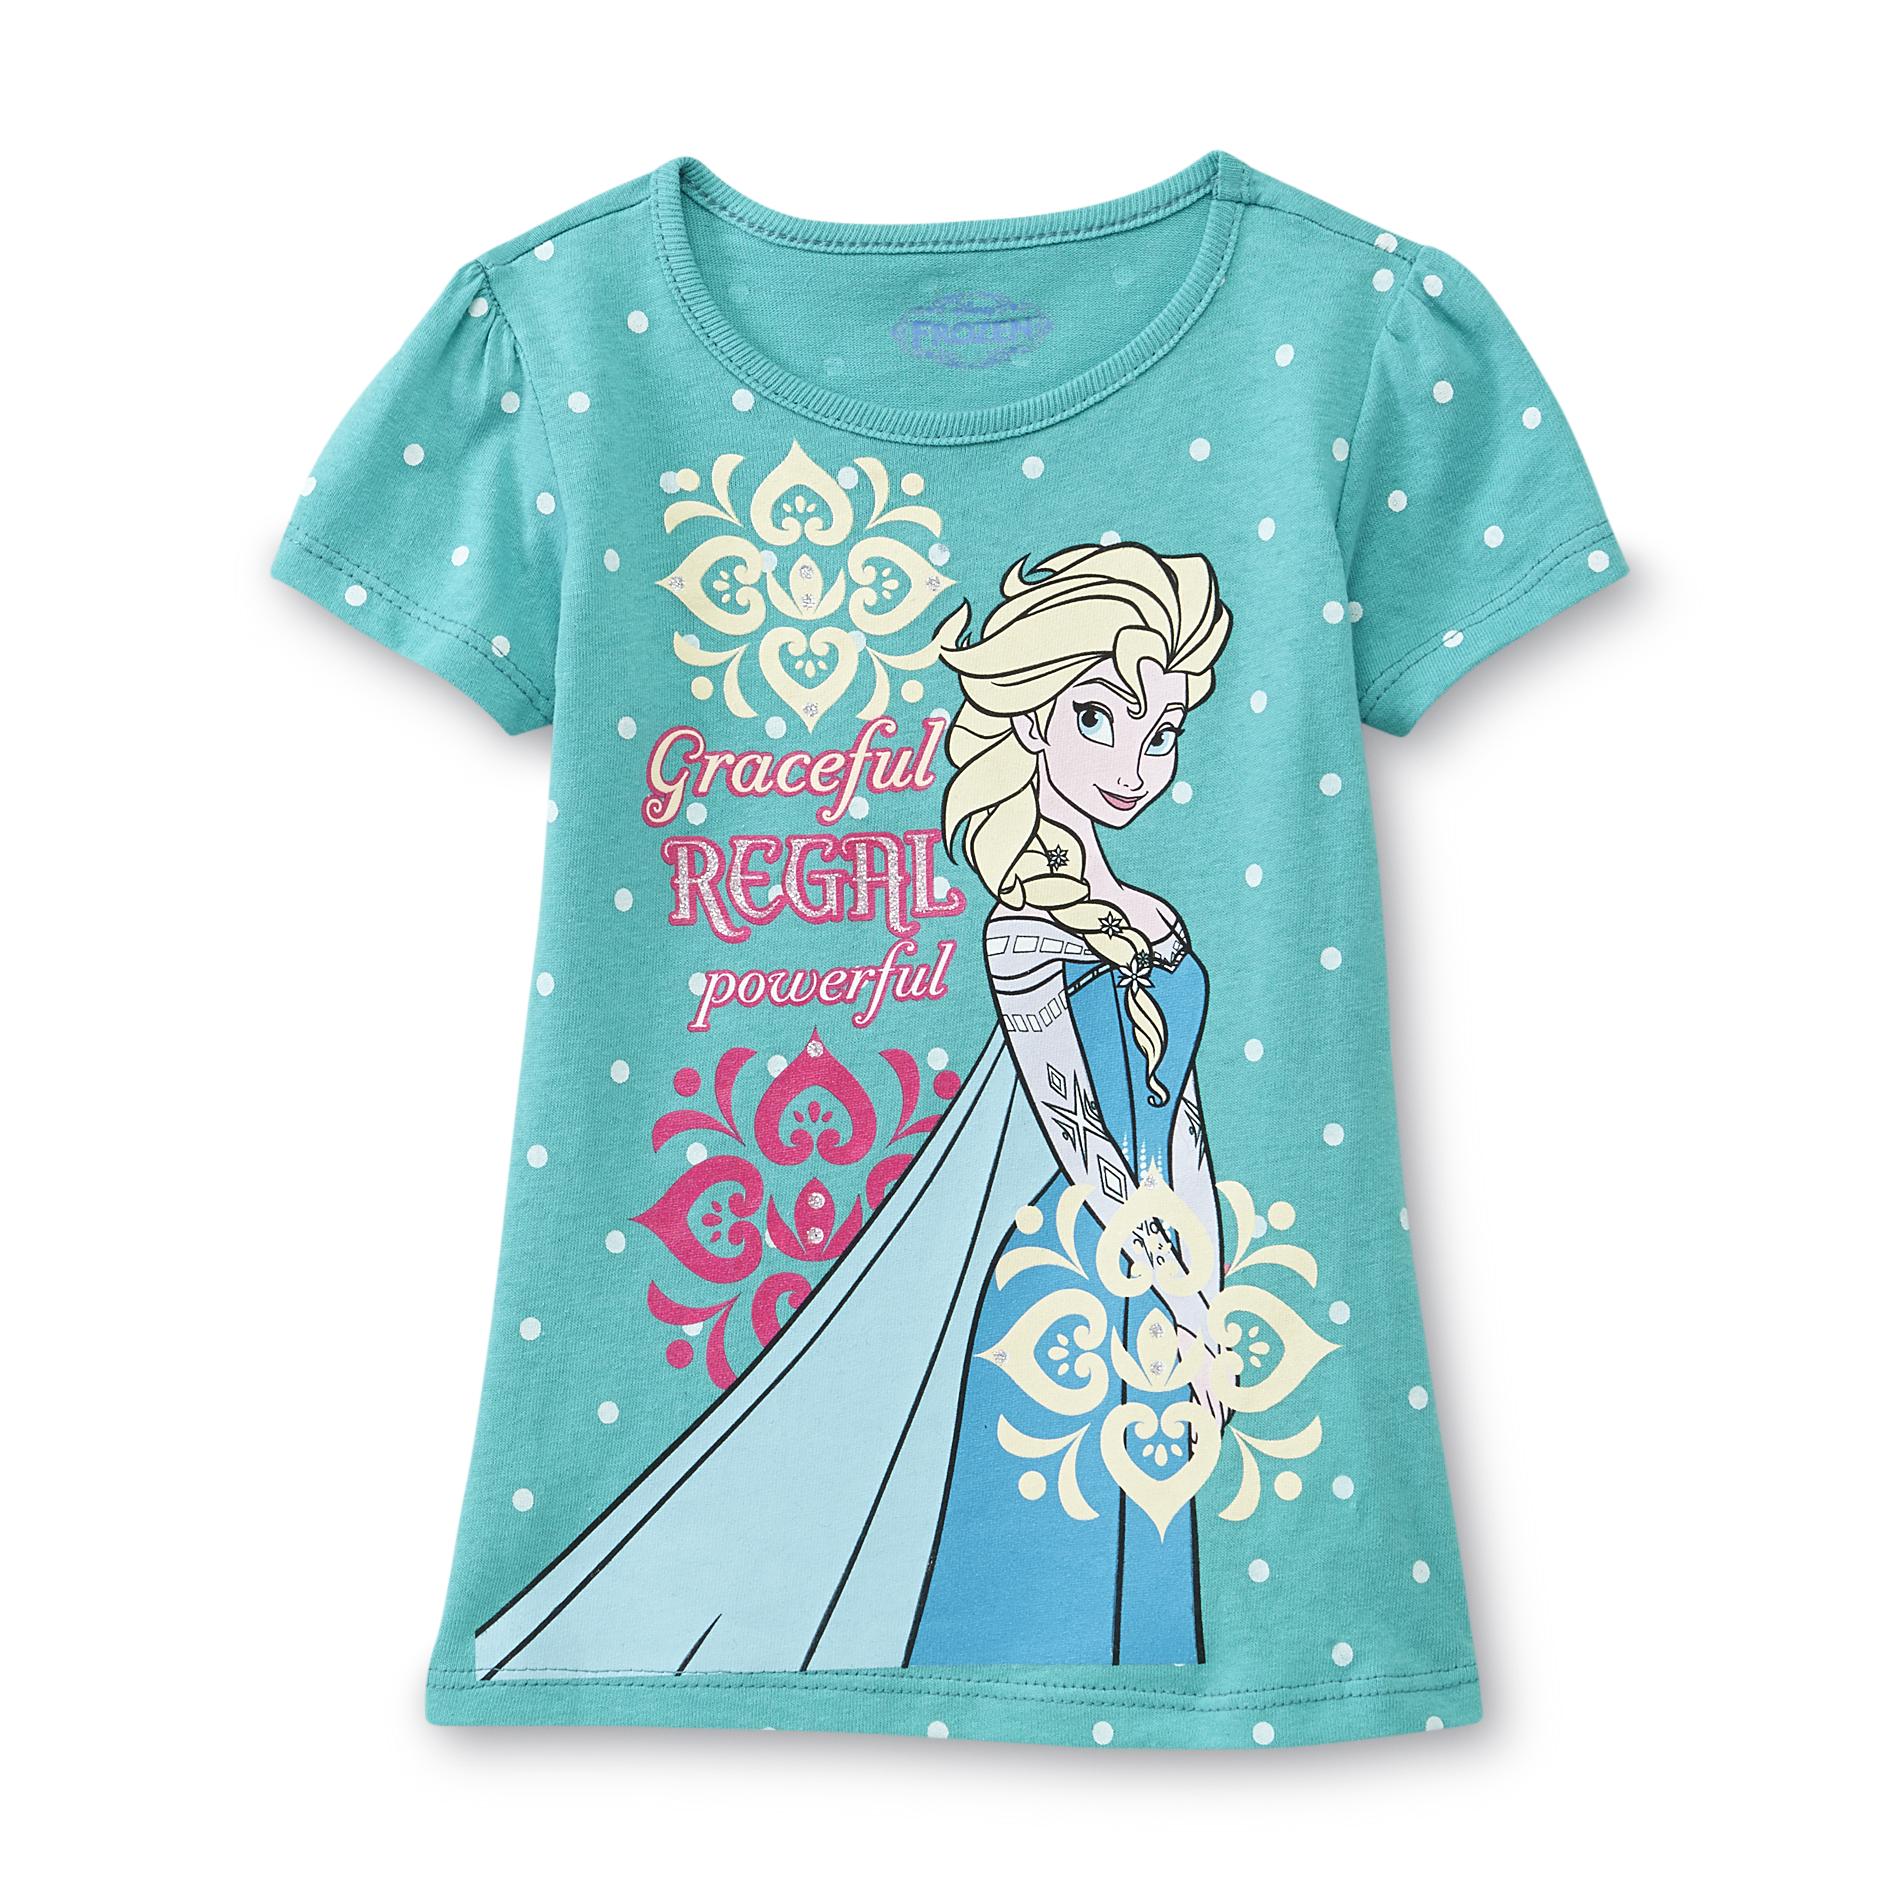 Disney Frozen Toddler Girl's Top - Elsa